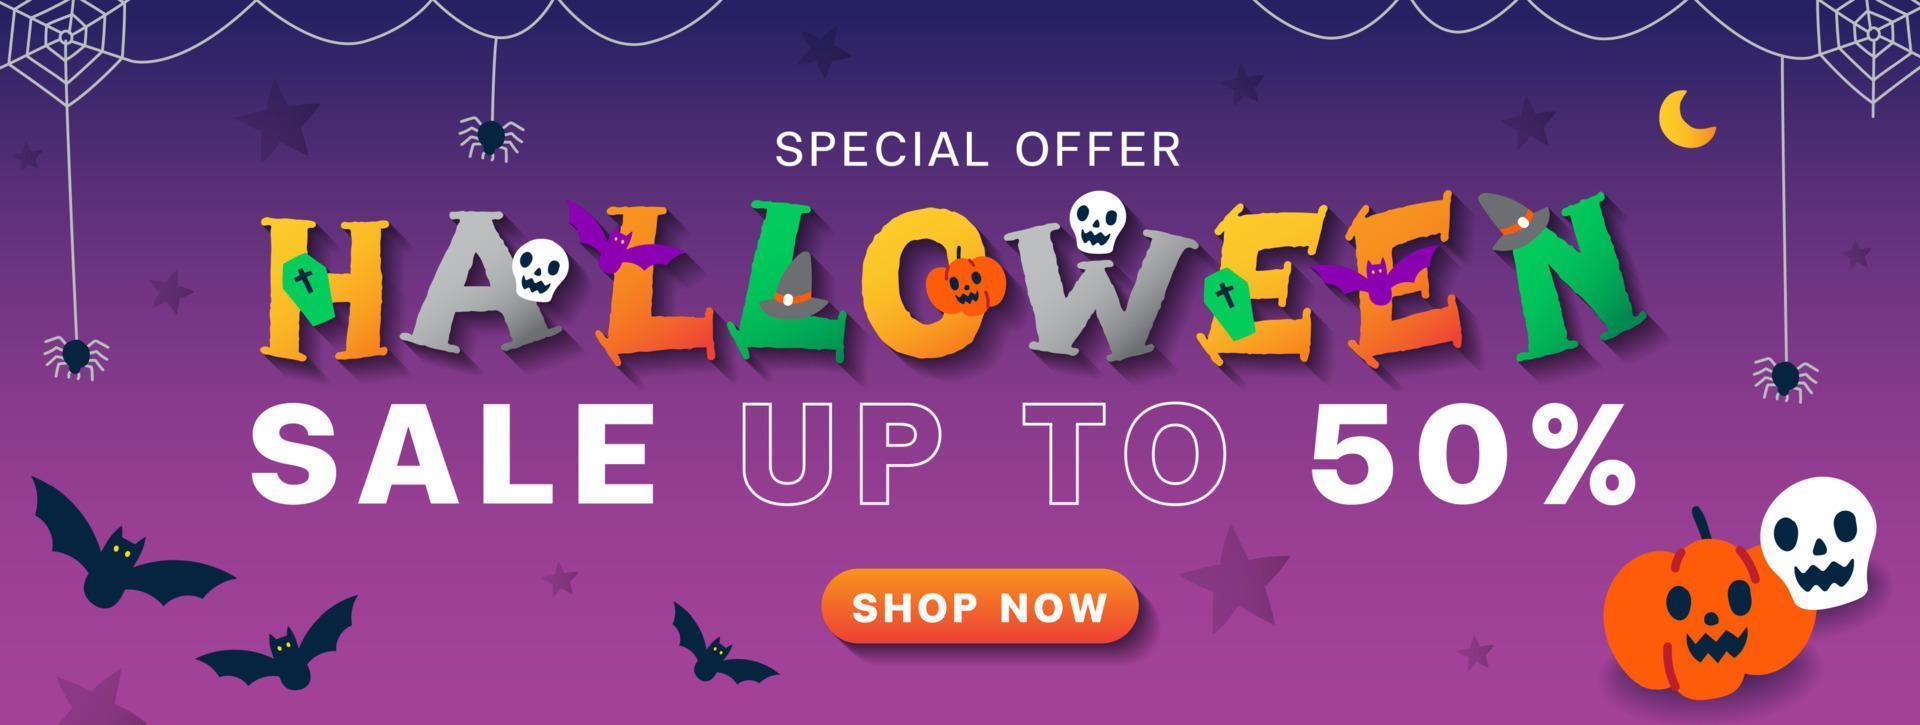 publicidade bonito dos desenhos animados de halloween promoção de marketing on-line venda até 50 web banner vetor de cartão de convite de fundo violeta fantasma, crânio, abóbora, jack o lanterna, morcego, loja de teia de aranha agora botão